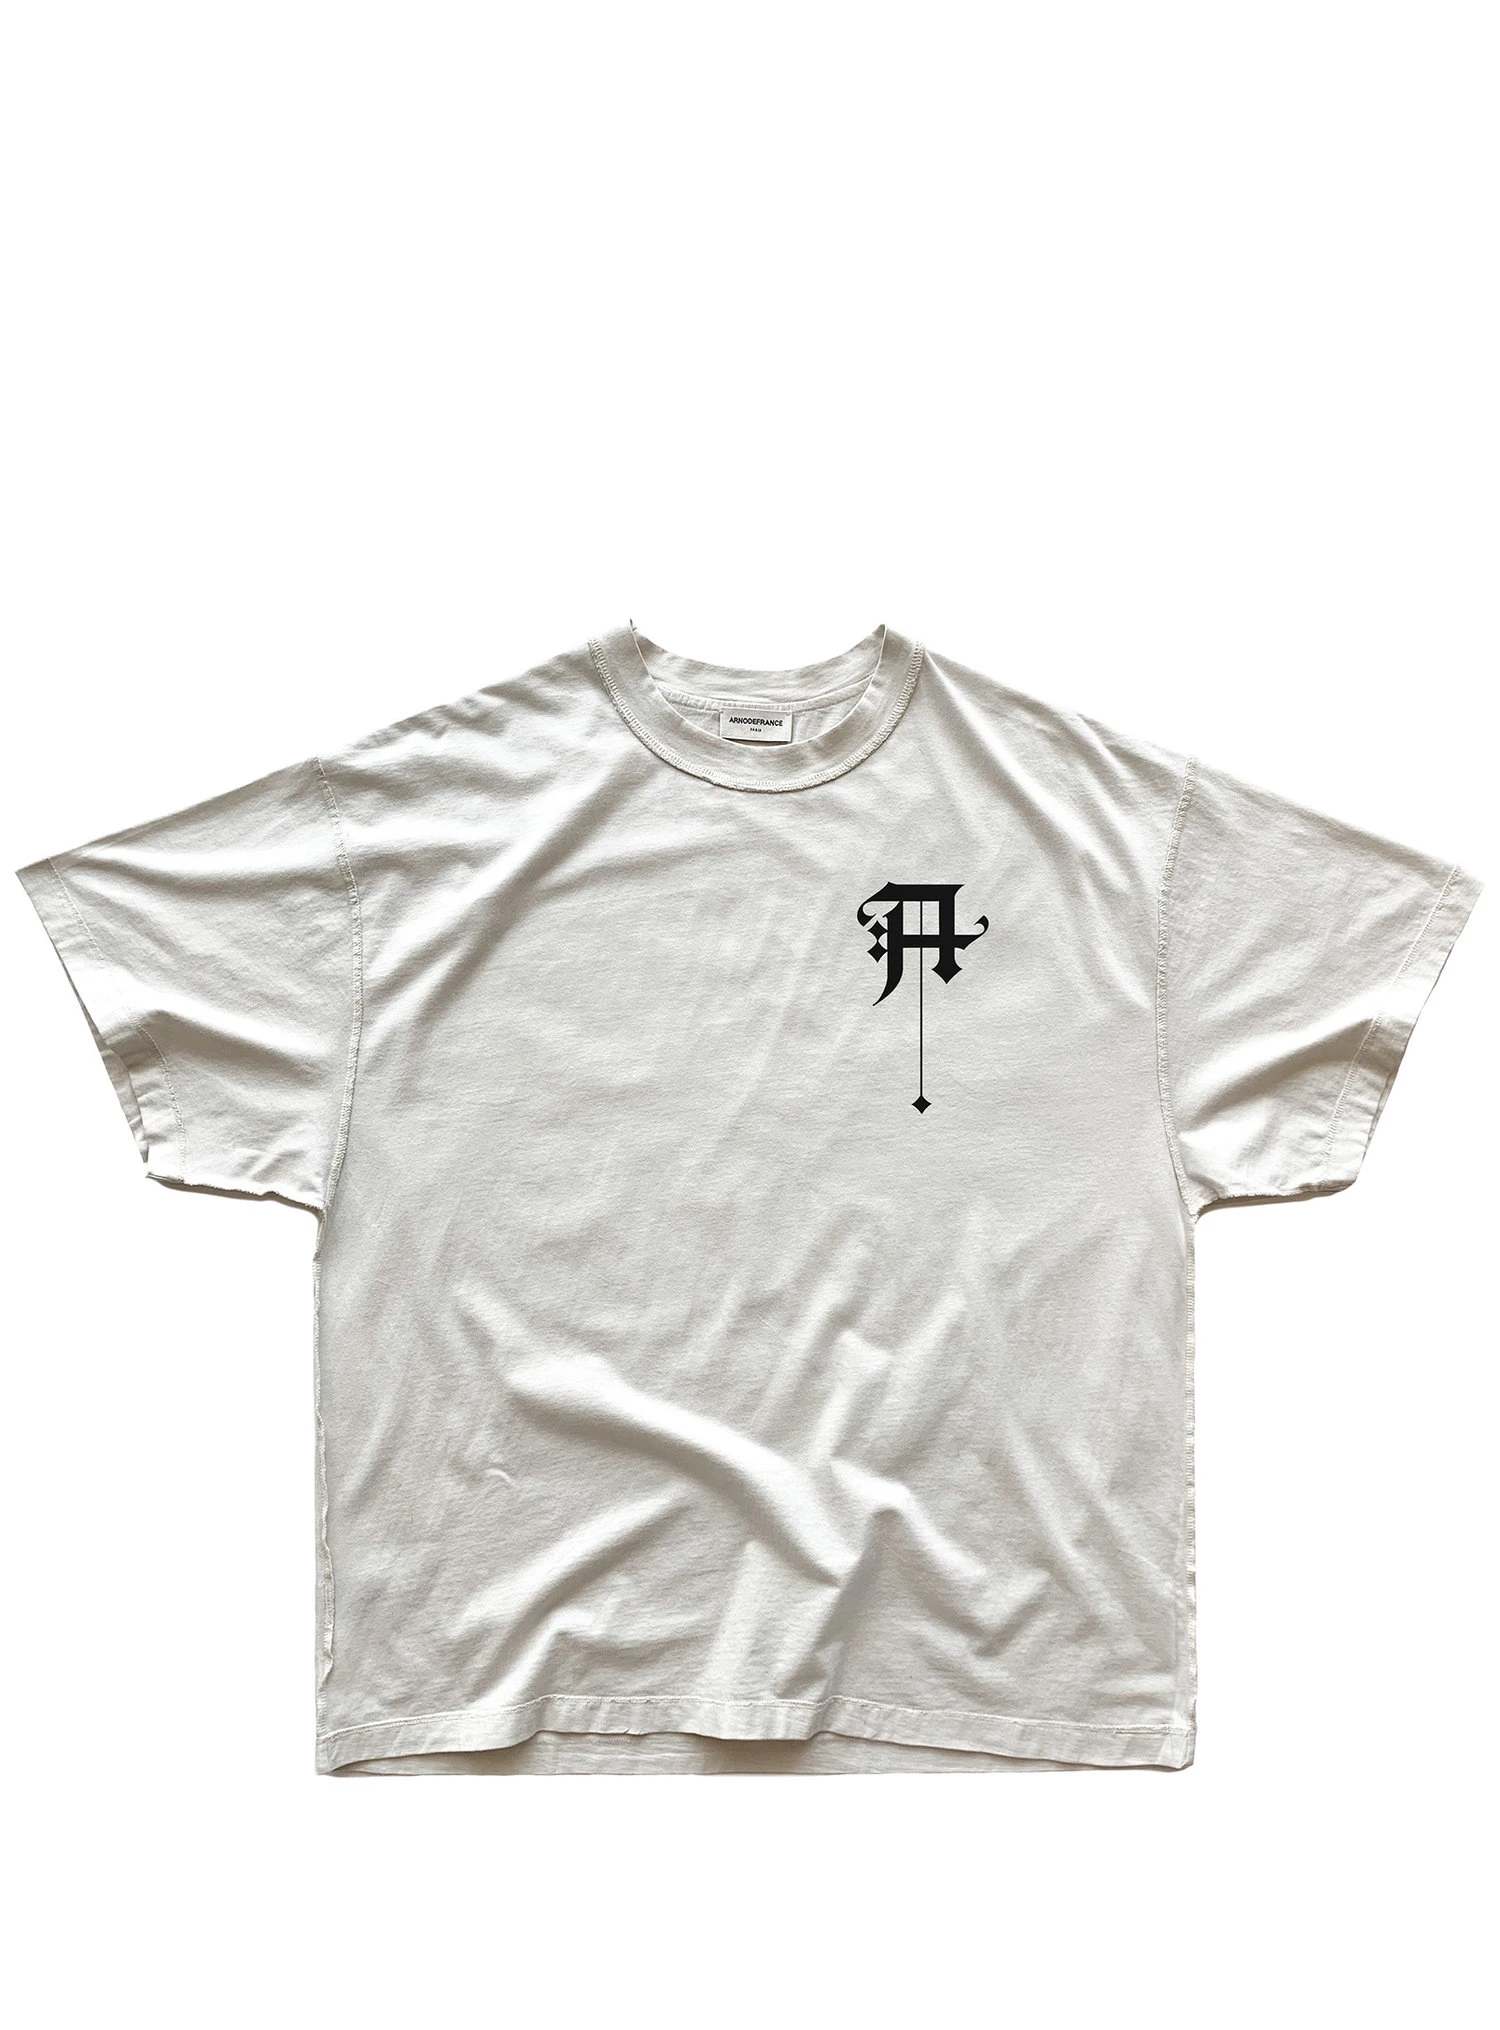 19SS ARNODEFRANCE, футболка, 1:1, Топ Версия, с буквенным принтом, Harajuku, хлопок, негабаритный Топ, футболки для мужчин и женщин, Канье, хип-хоп, туман, футболка